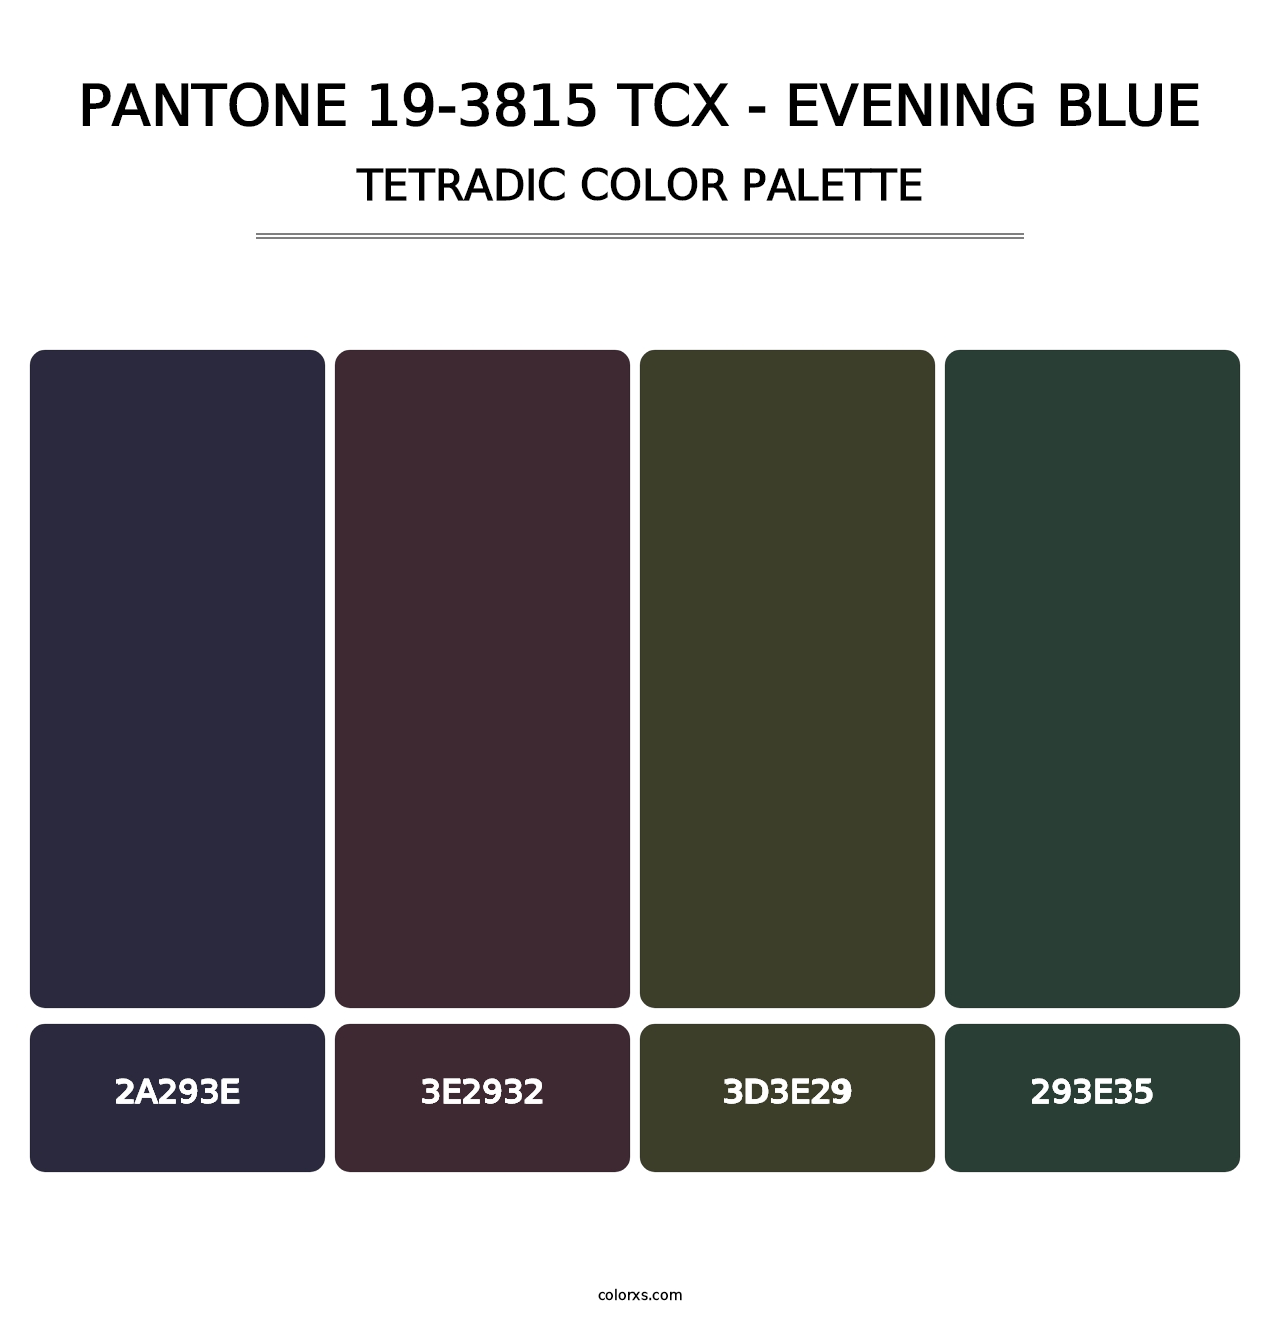 PANTONE 19-3815 TCX - Evening Blue - Tetradic Color Palette